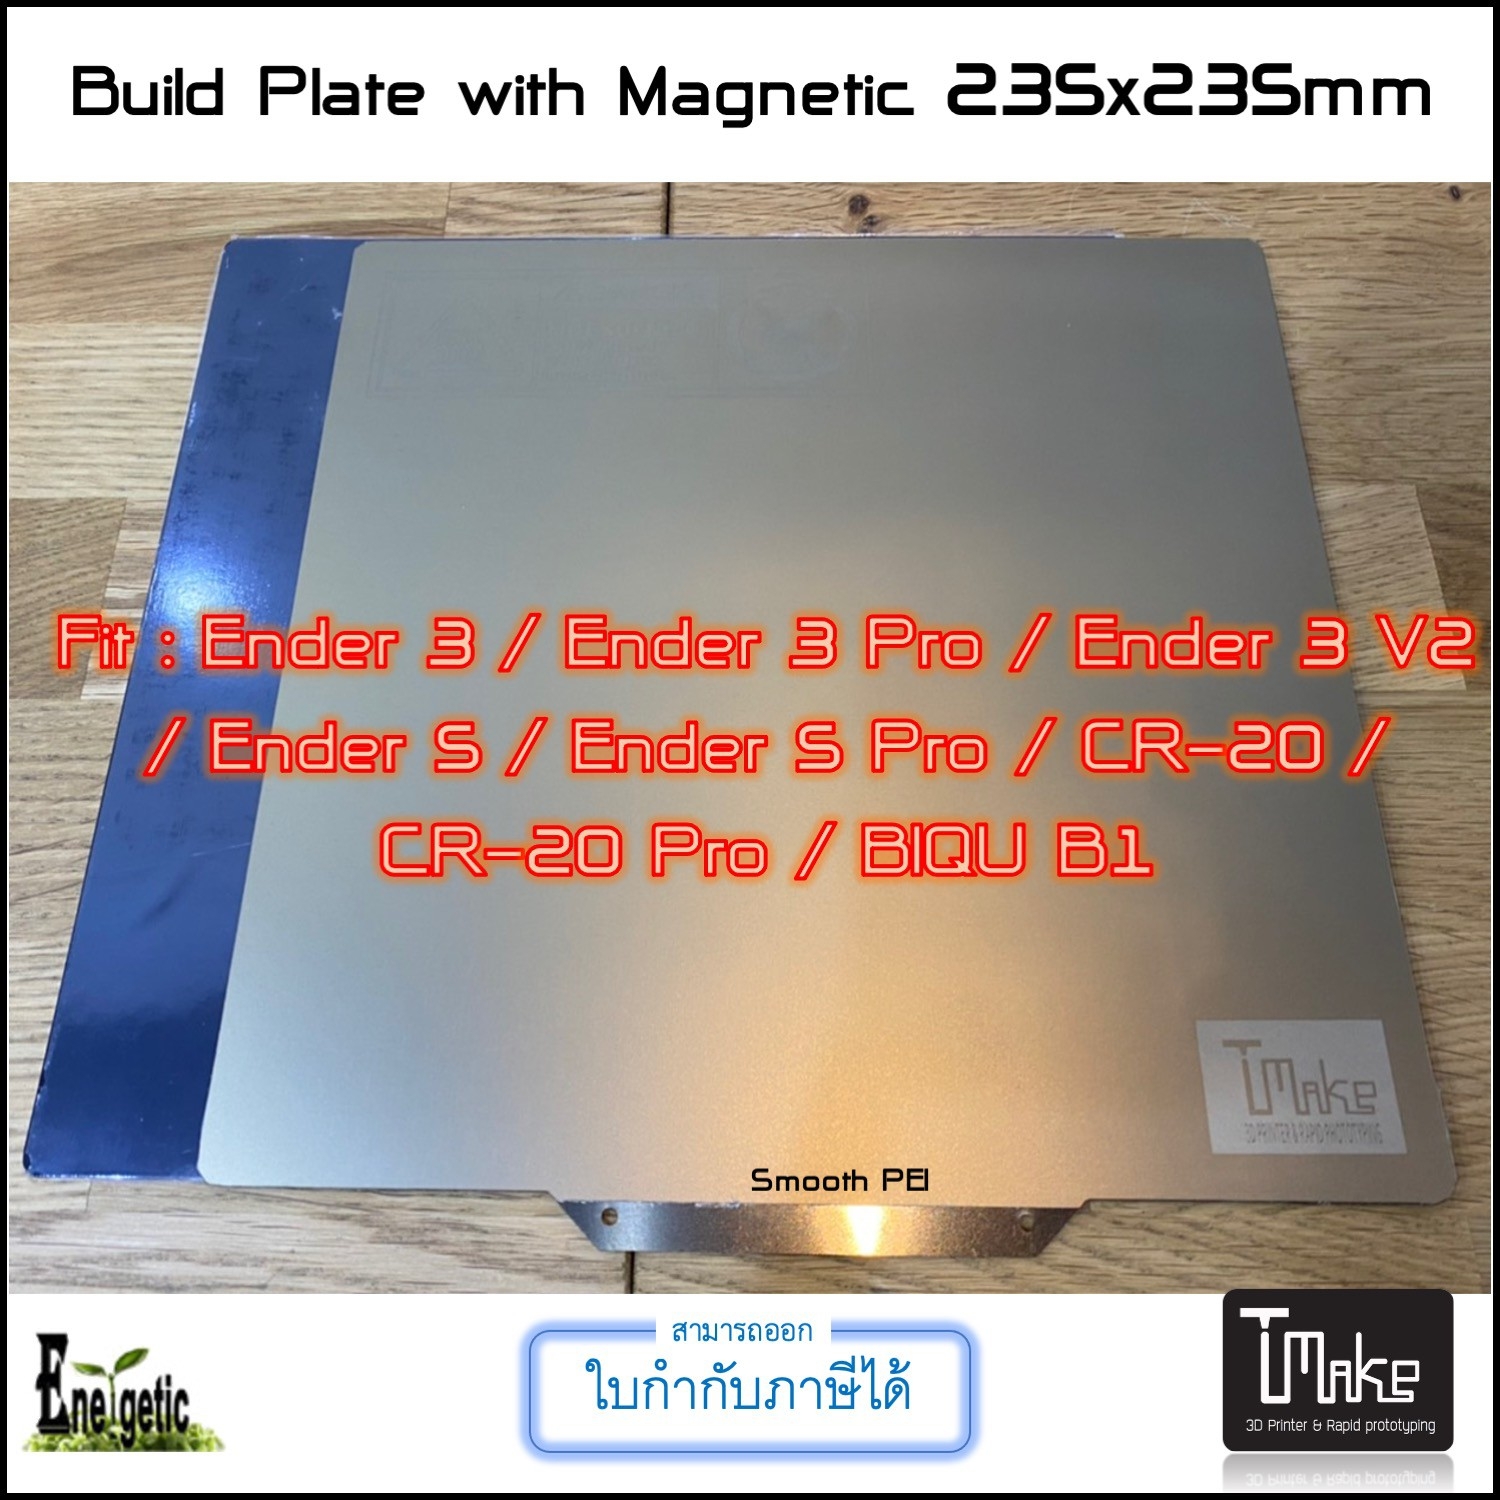 ENERGETIC and T Make 3D  235x235mm (Smooth PEI) Steel Sheet Build Flex Plate + Magnetic Base for  Ender 3 / Ender 3 Pro / Ender 3 V2